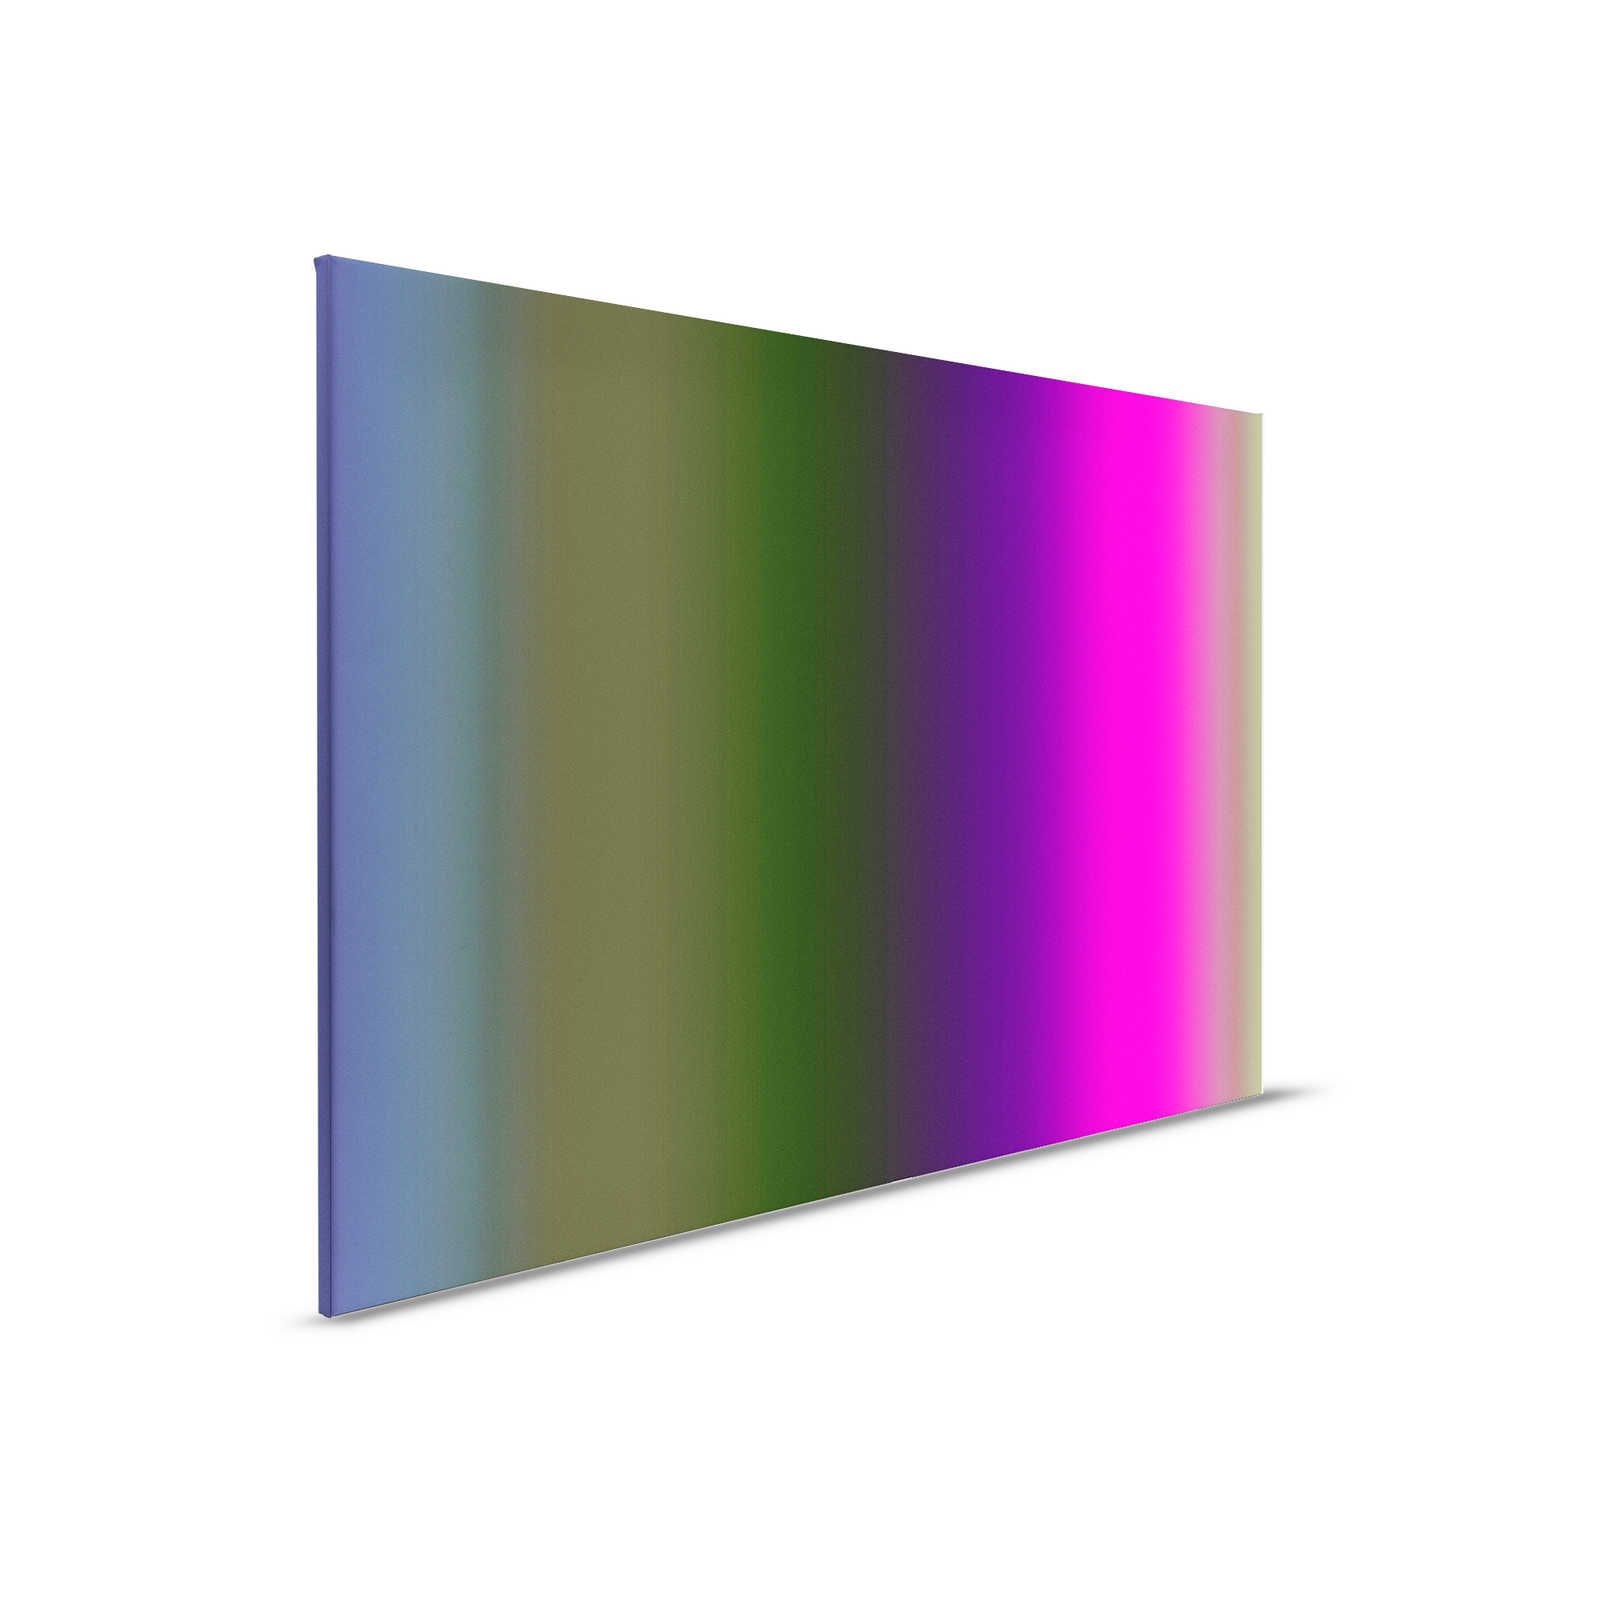         Over the Rainbow 3 - Leinwandbild buntes Farbspektrum mit Neon-Pink – 0,90 m x 0,60 m
    